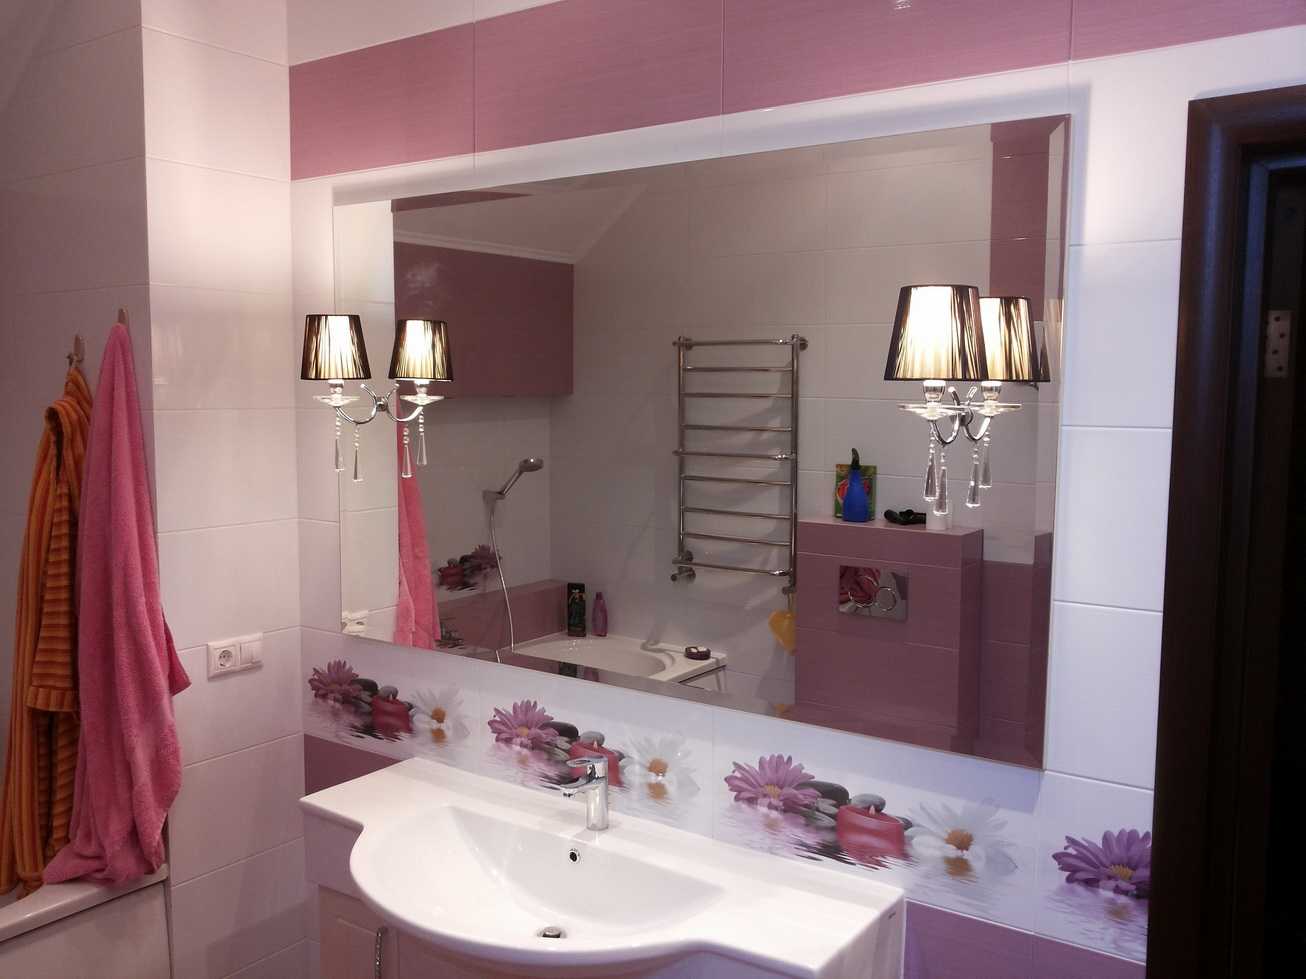 Зеркала в интерьере ванной: правила и принципы расположения и оформления